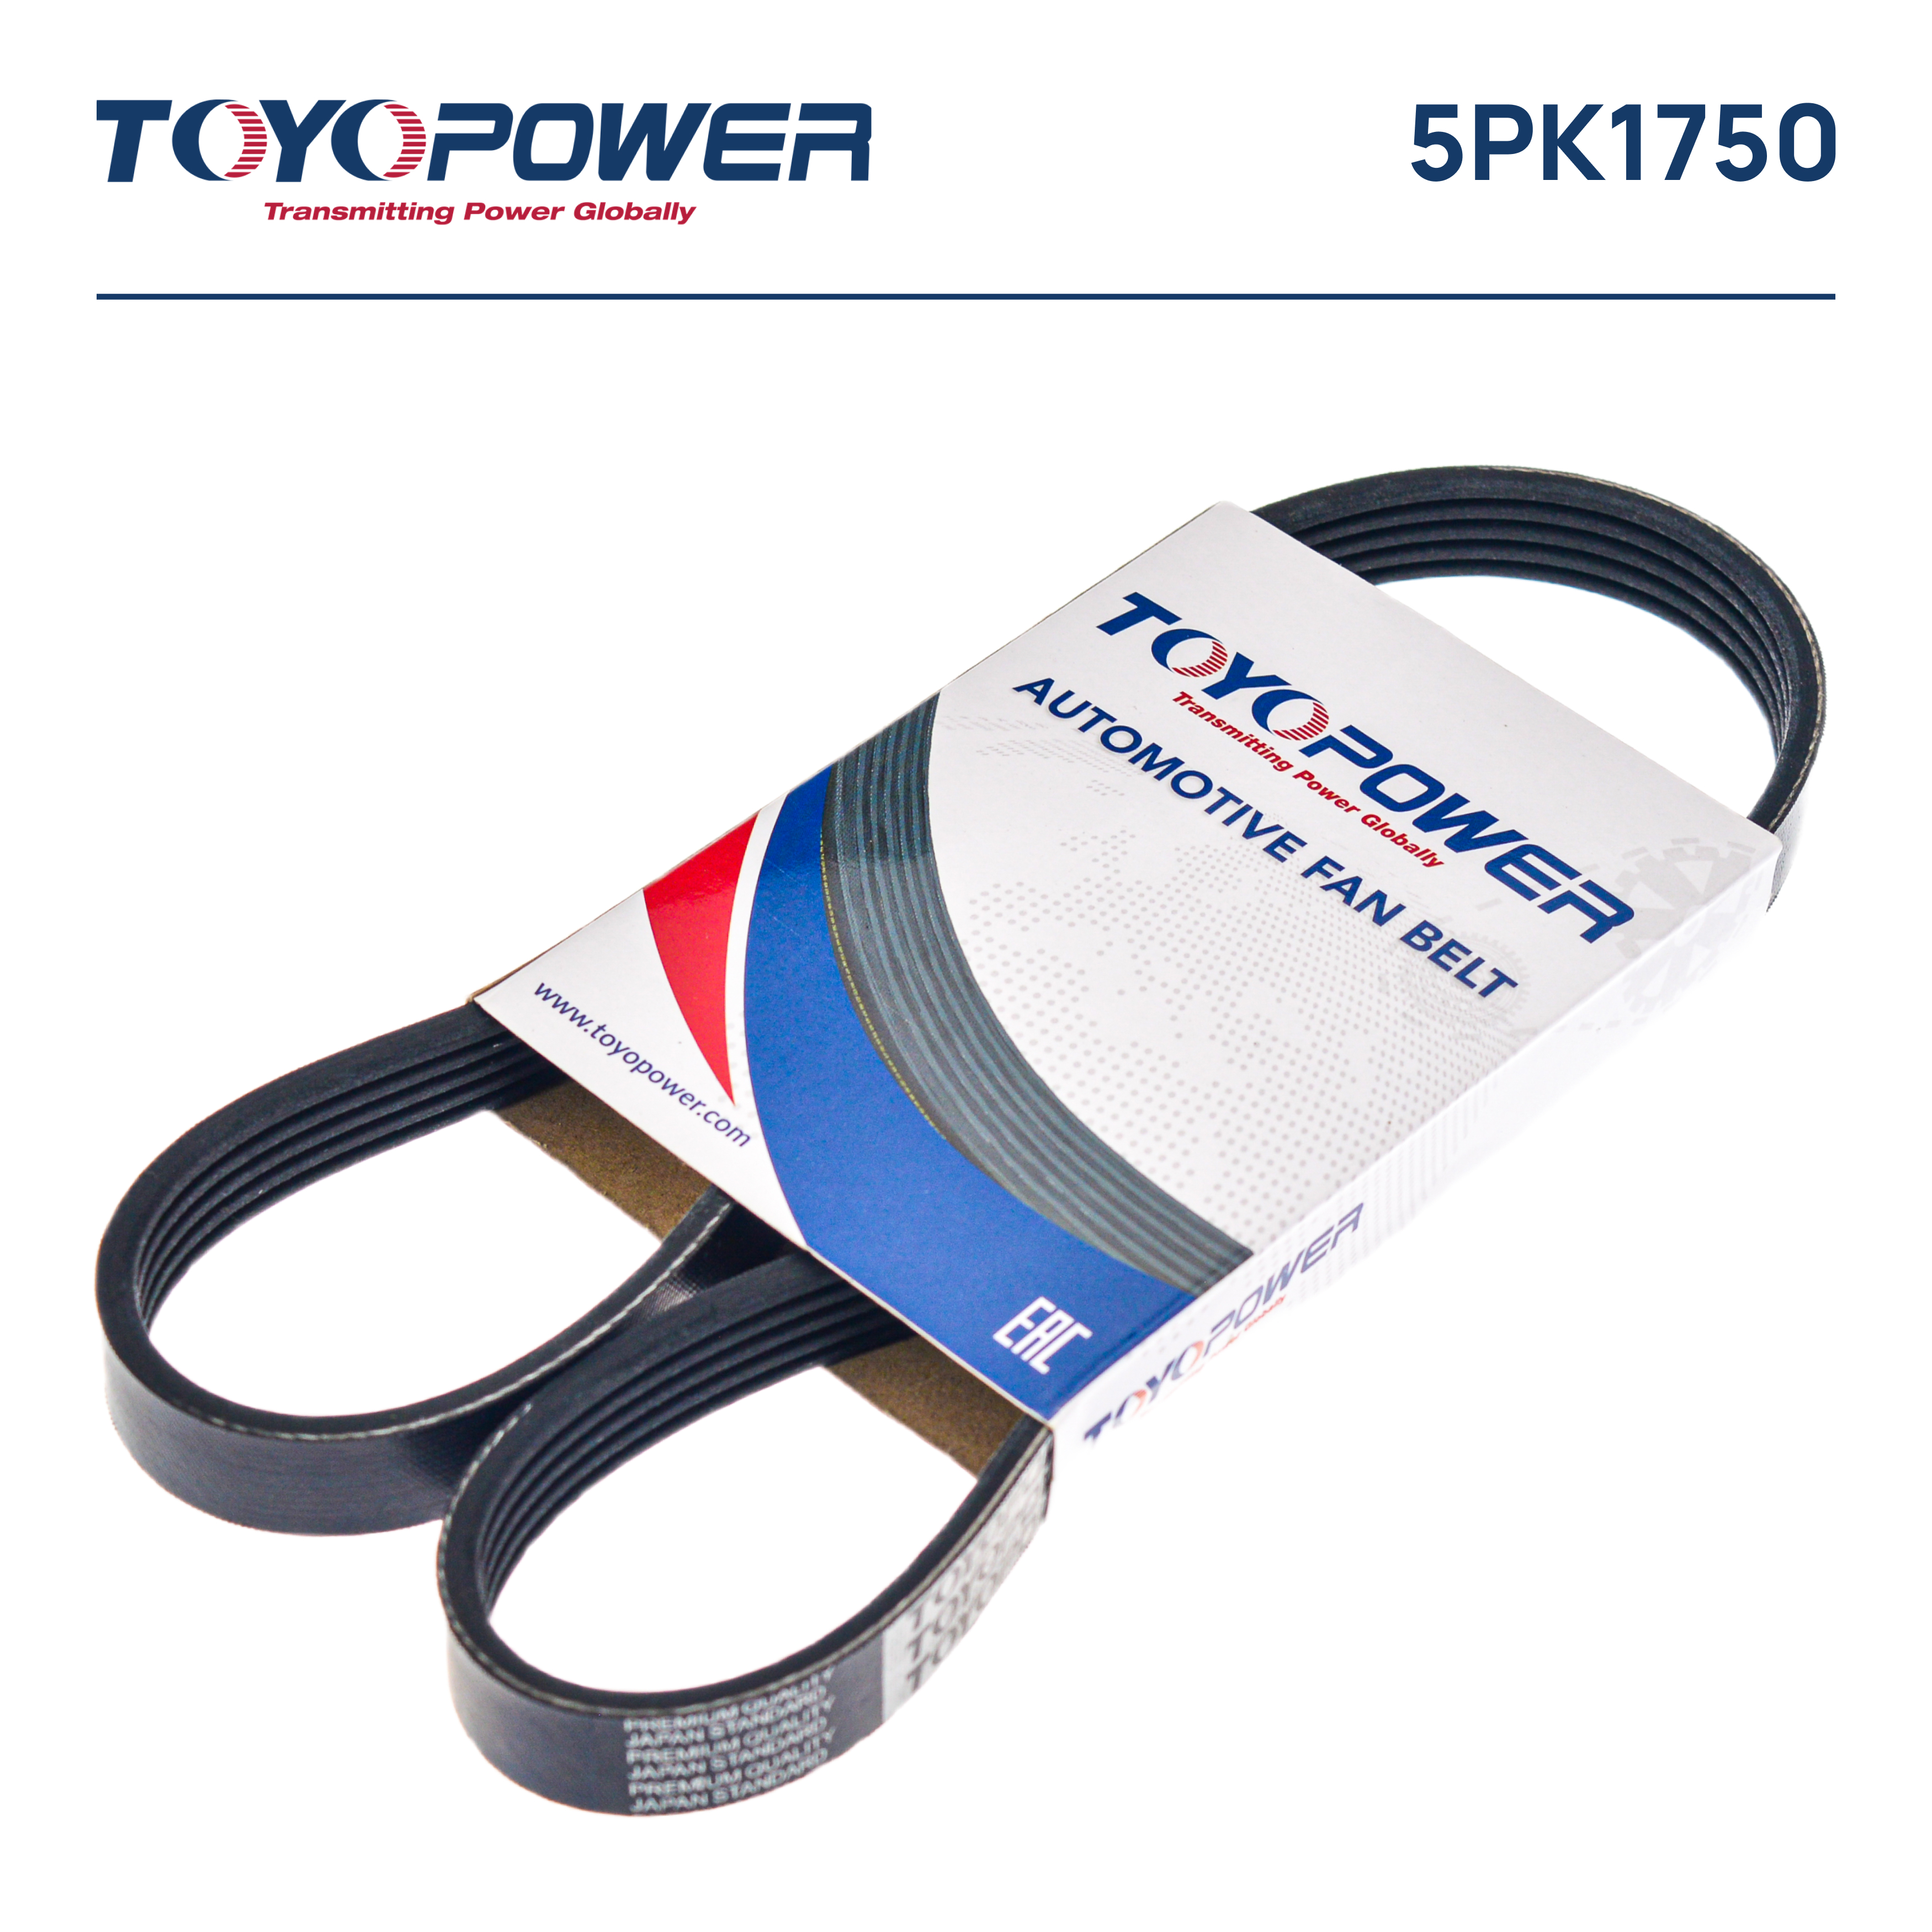 Ремень поликлиновый - Toyopower 5PK1750